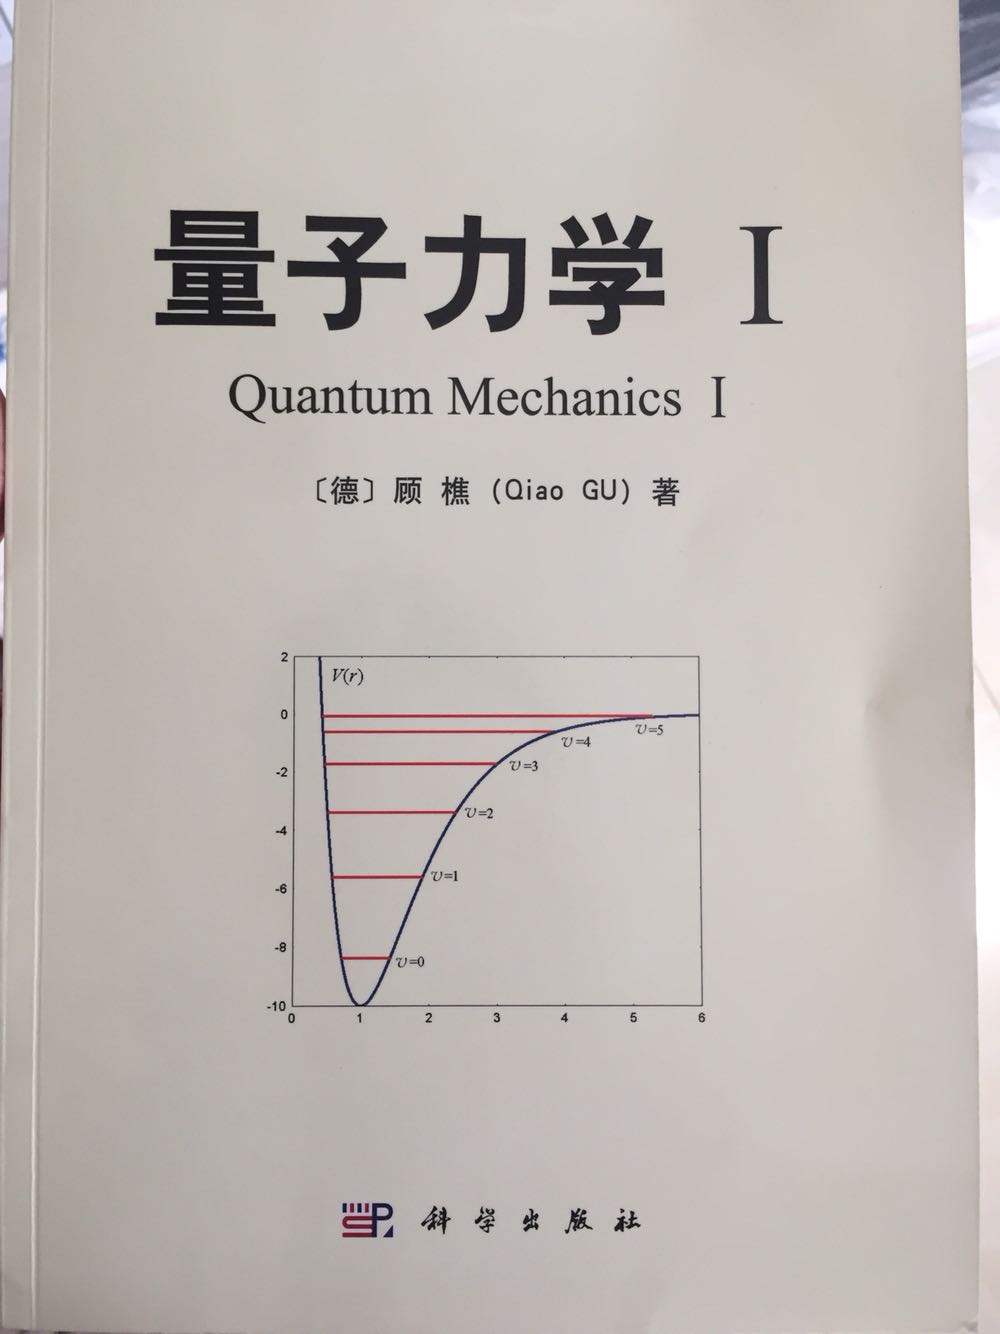 看简介而买的，量子力学的教材现在有比较大的扩展。不过这本书还是没逃出框框